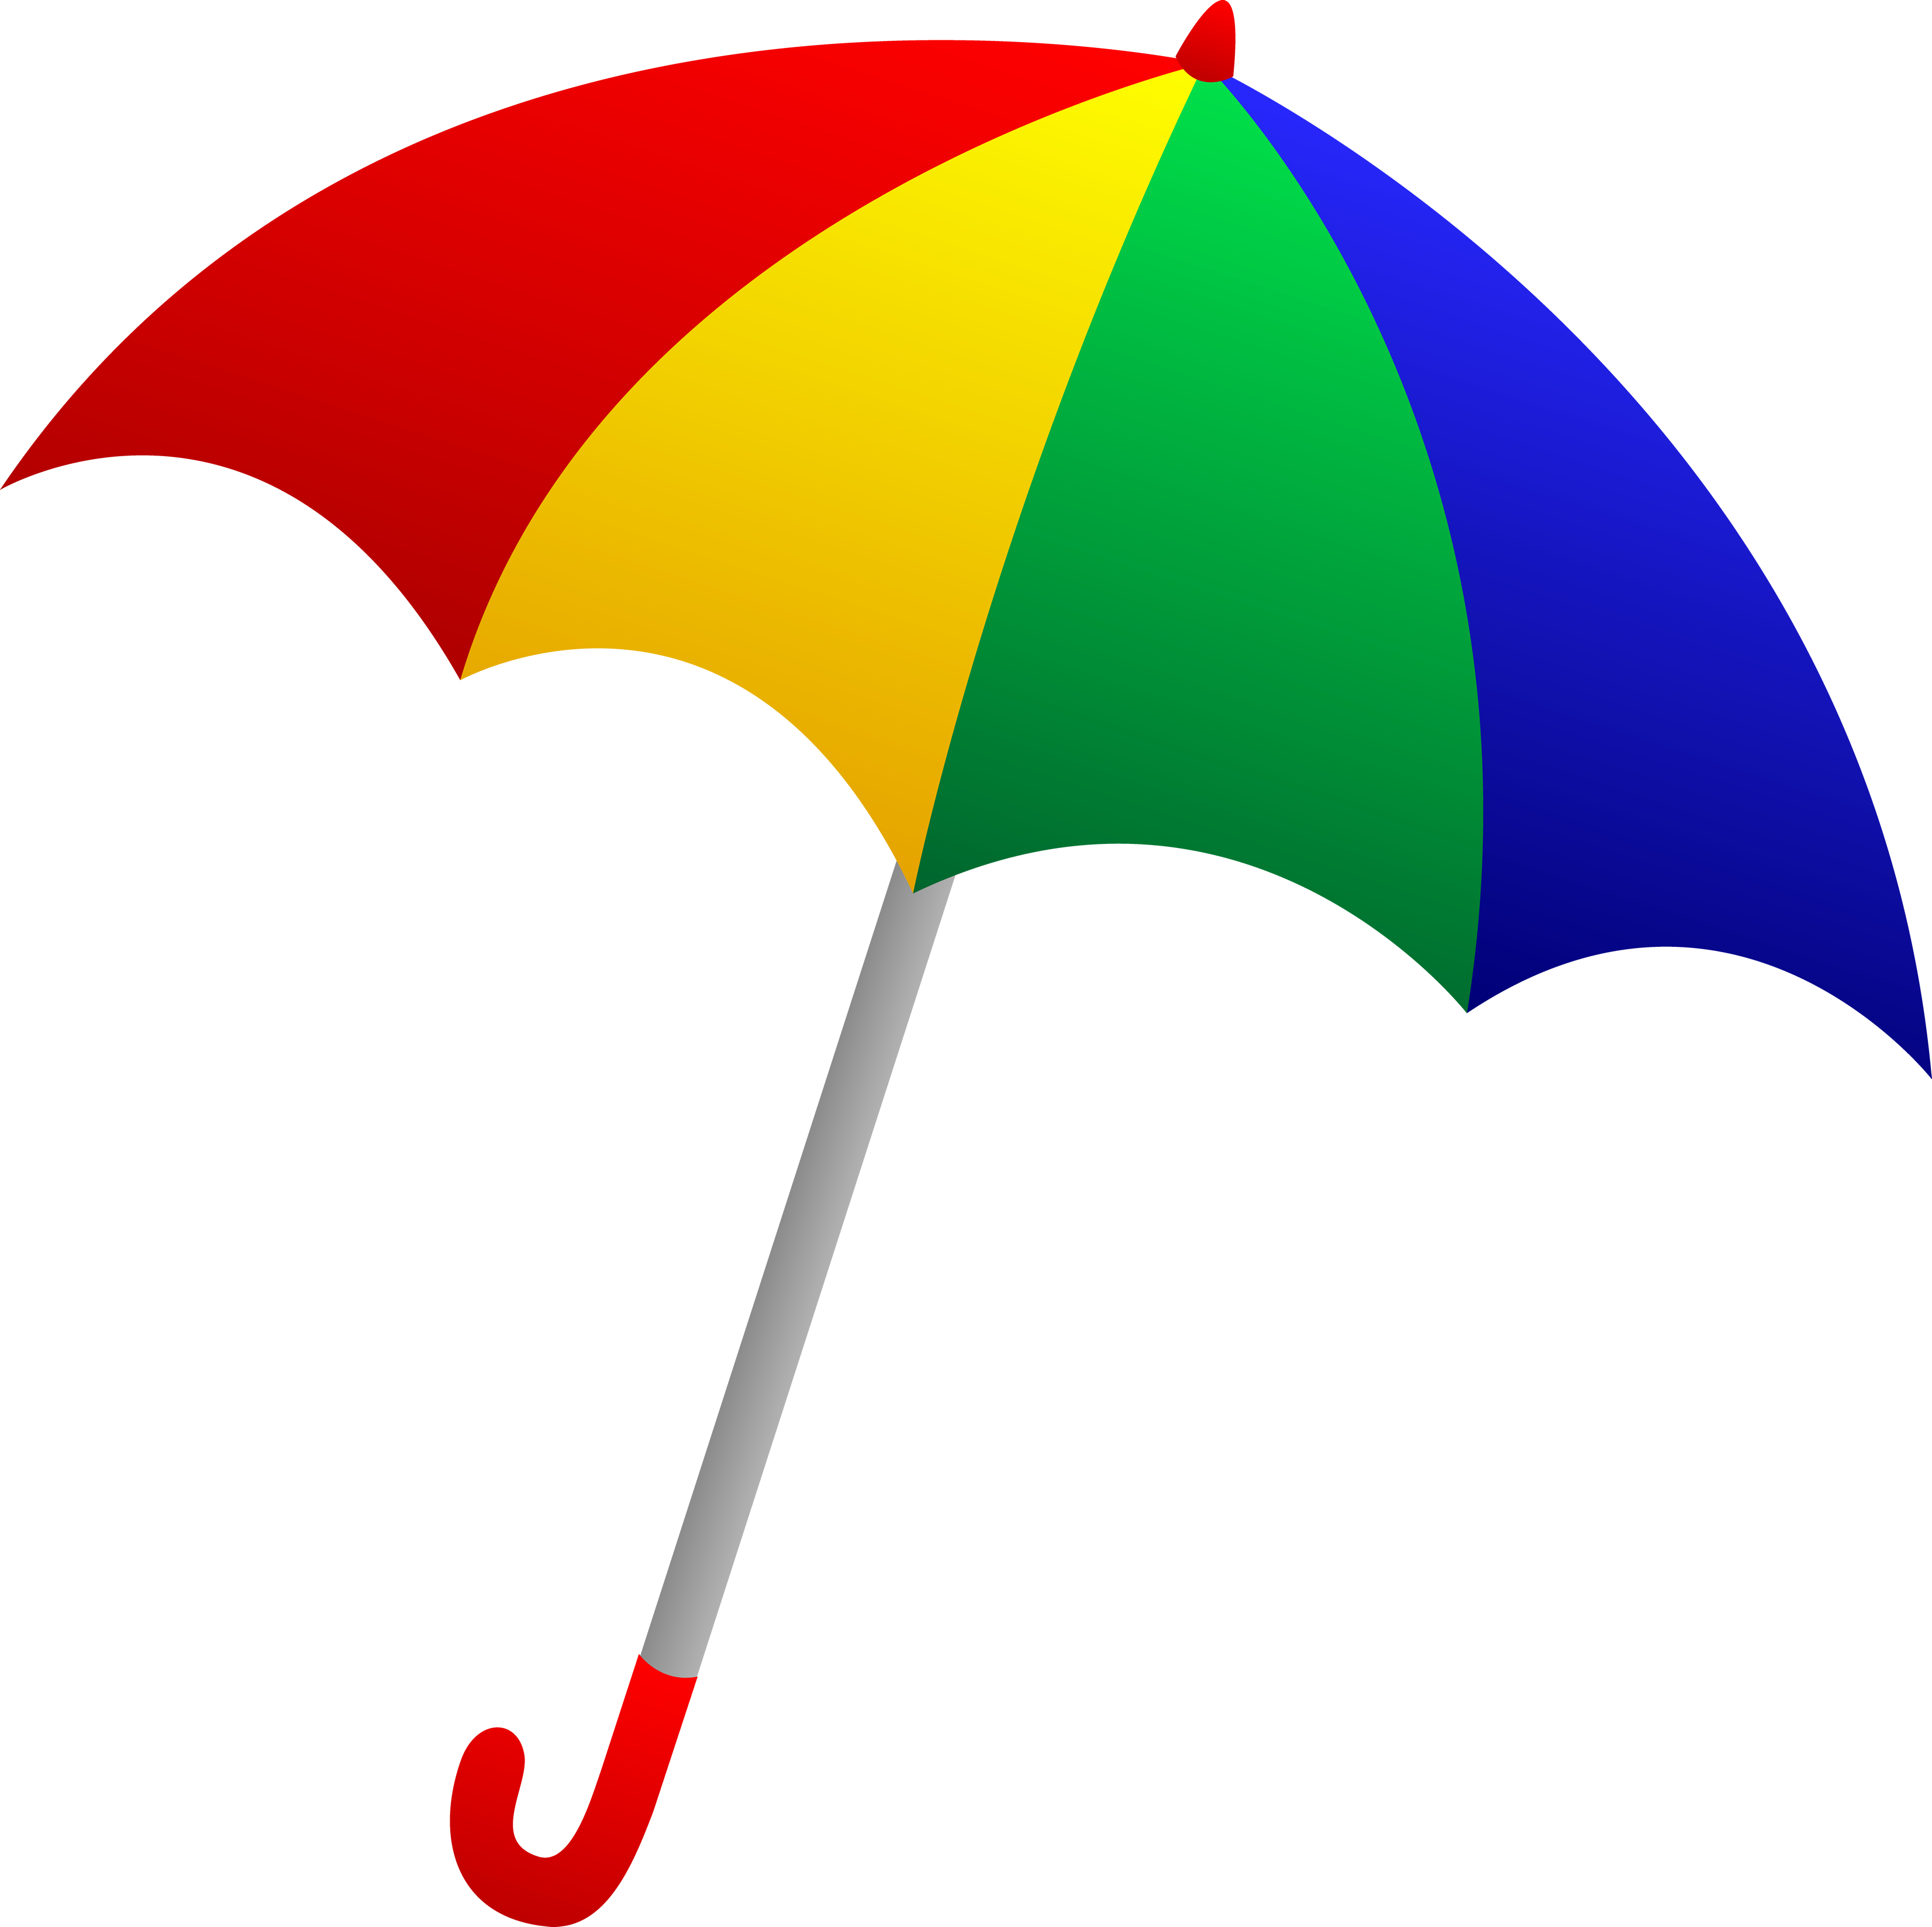 Clip art of an umbrella clipart 2 clipartbold clipartix